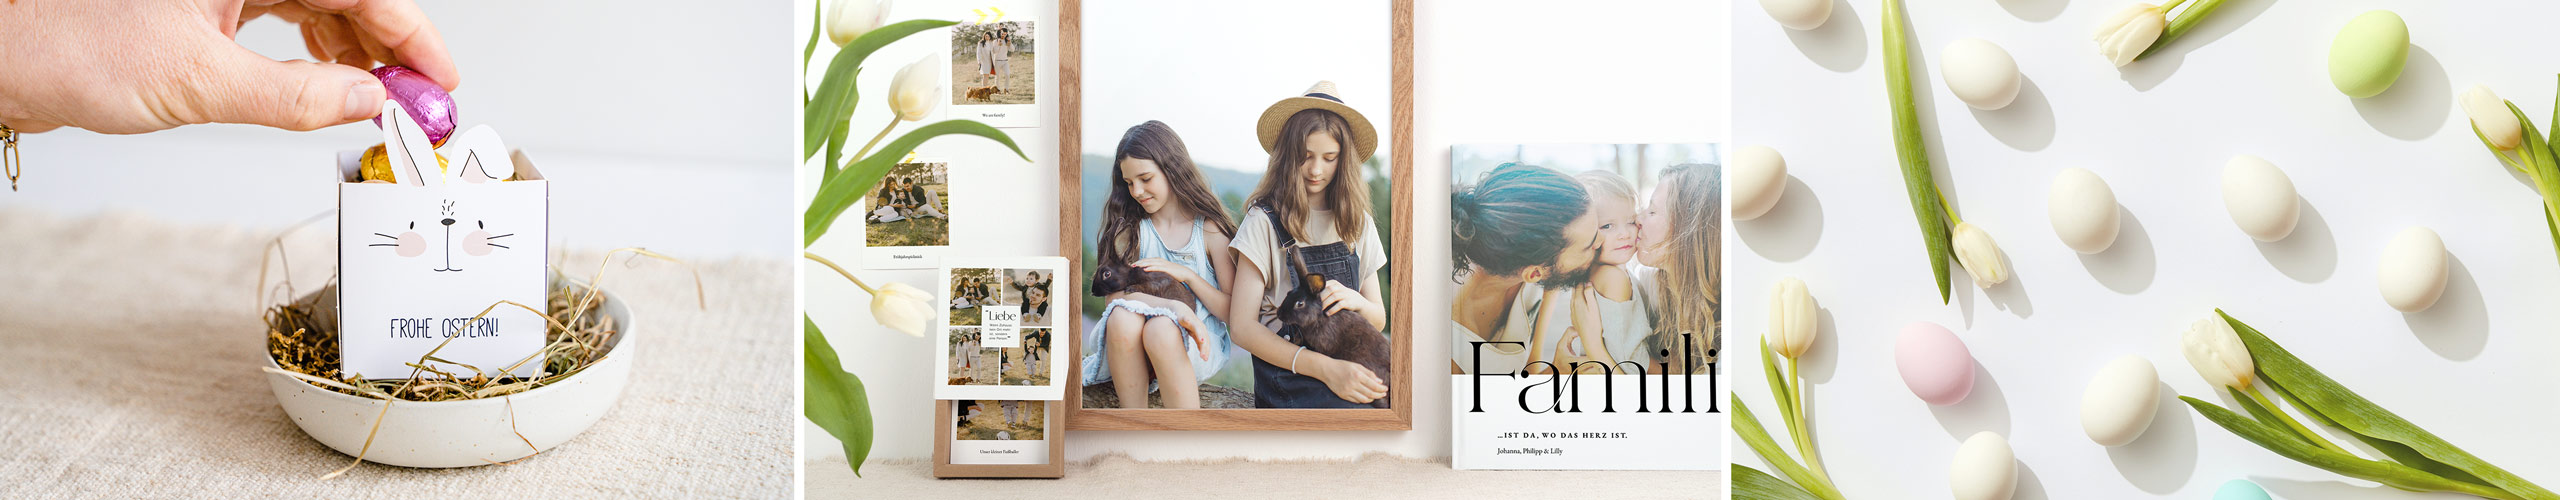 Fotobuch, Osterkörbchen und Wandbild als personalisierte Geschenkideen für Erwachsene